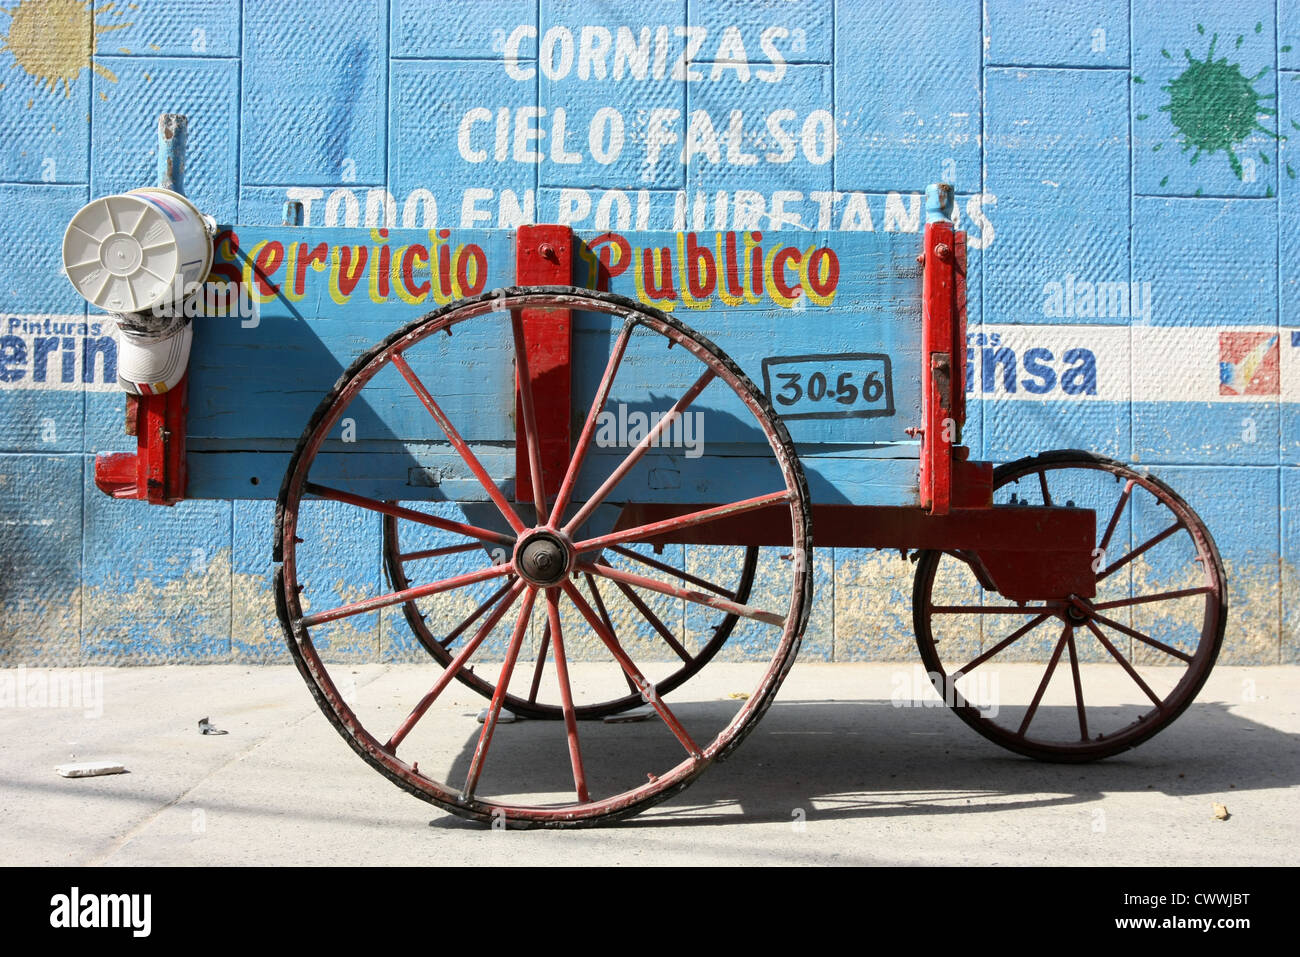 Vecchio servizio pubblico street Carrello Il [UNESCO World Heritage Site] di Cartagena, Colombia Sud America Foto Stock